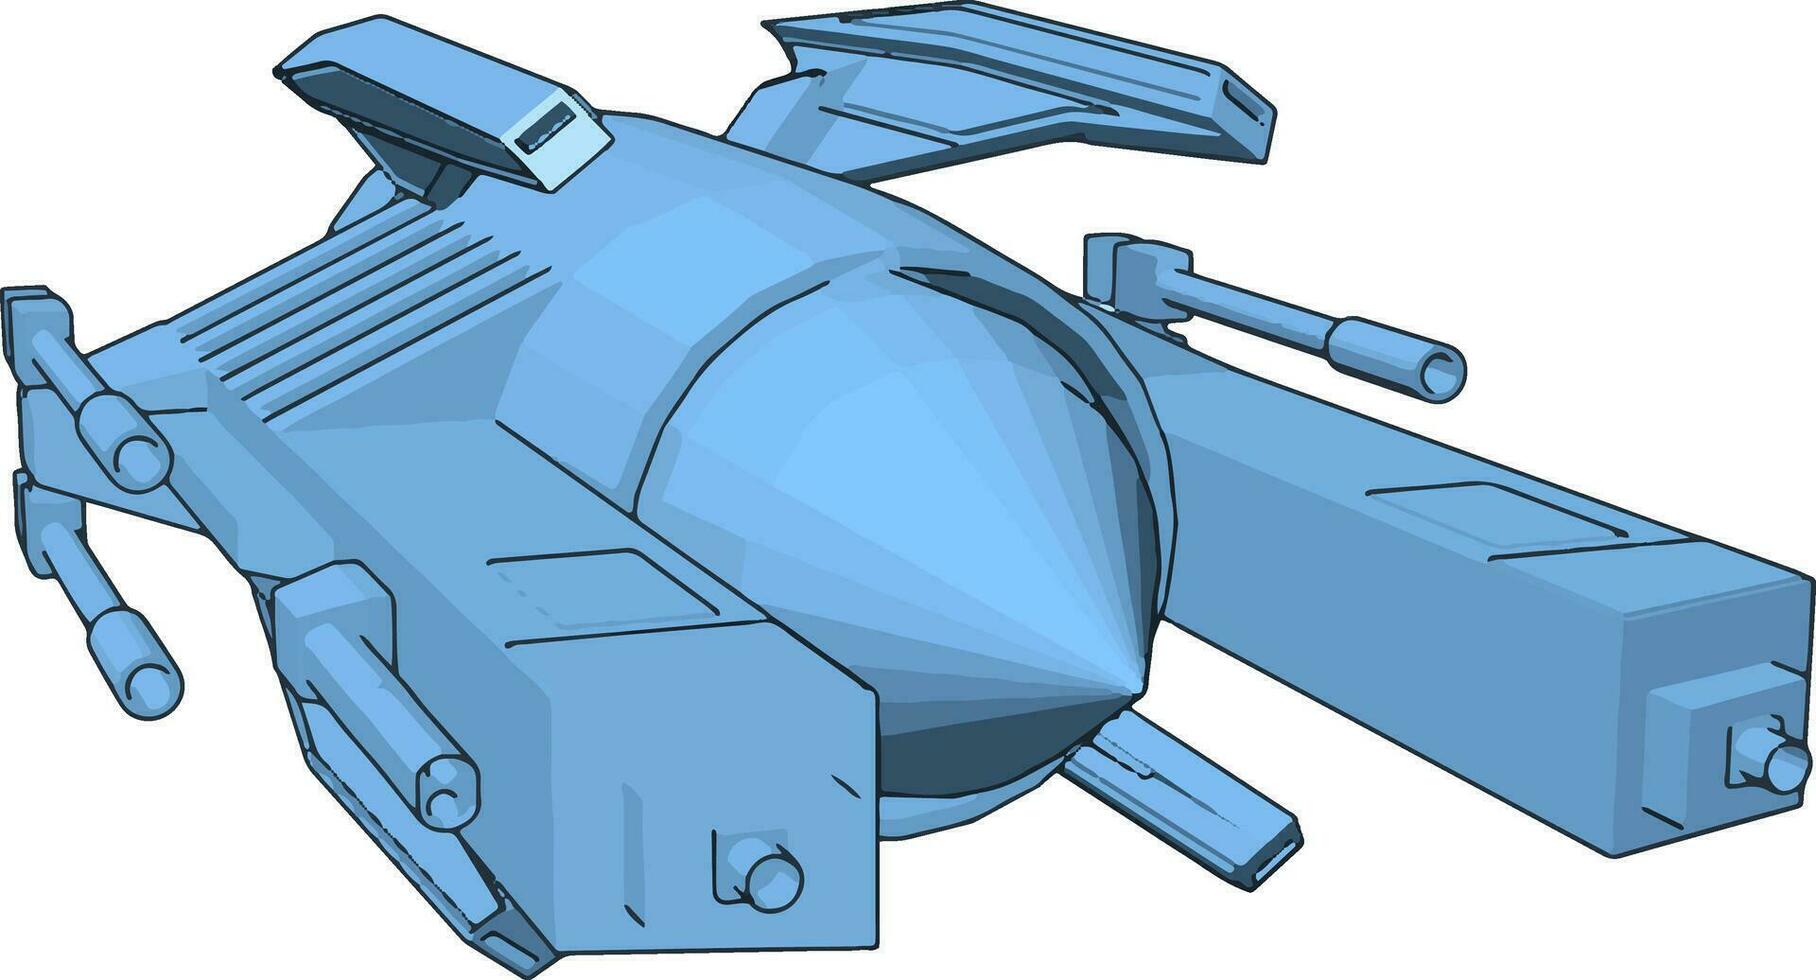 Light blue sci-fi battleship vector illustration on white background